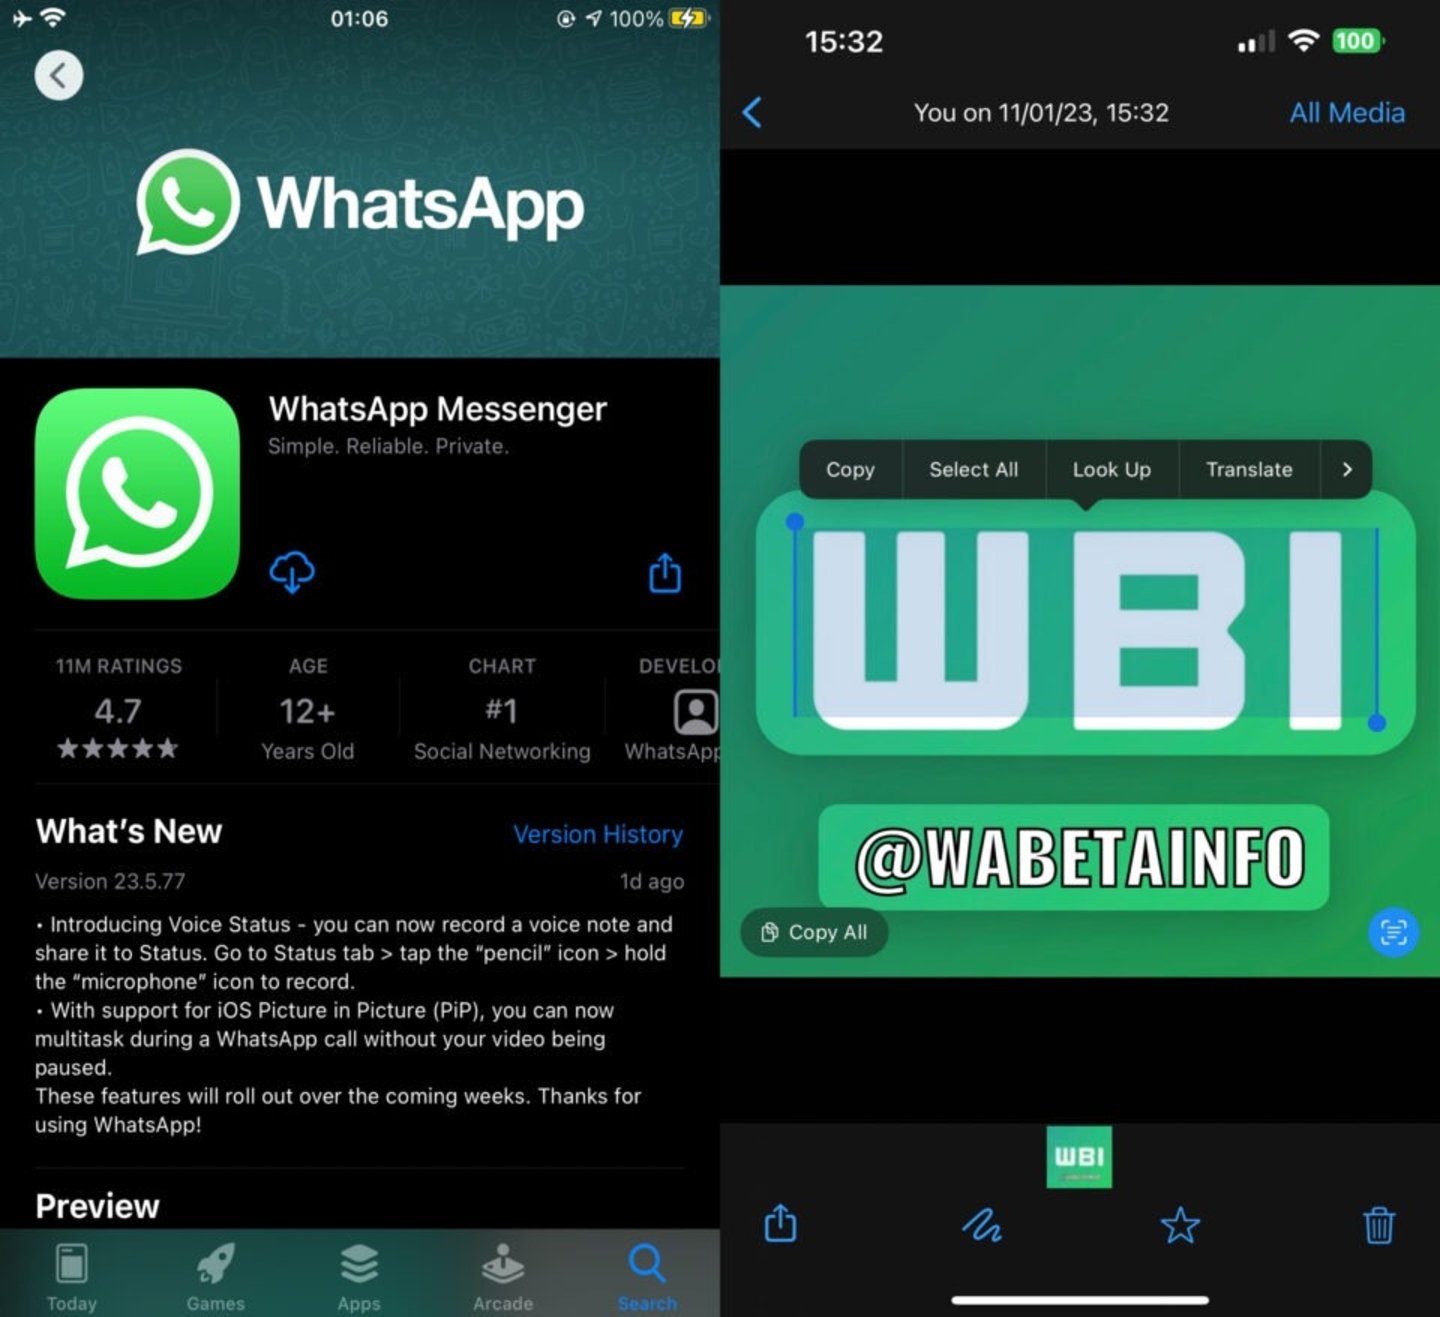 Captura de pantalla que muestra la función de selección de texto en imágenes en la aplicación WhatsApp